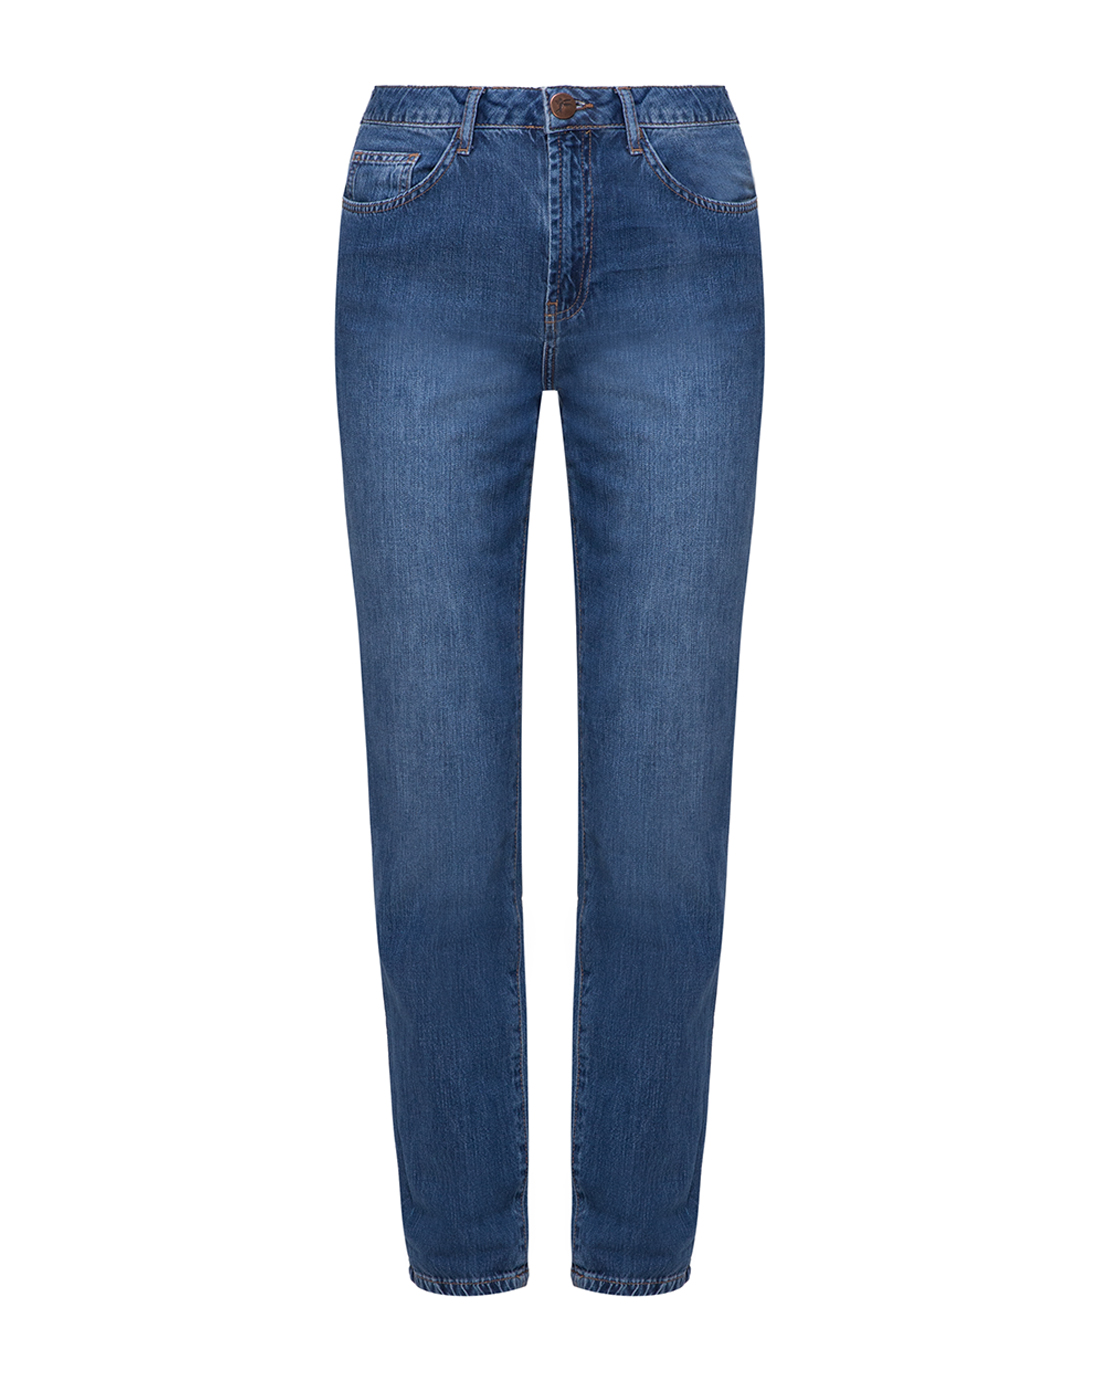 Женские синие джинсы Oneteaspoon S22262-1